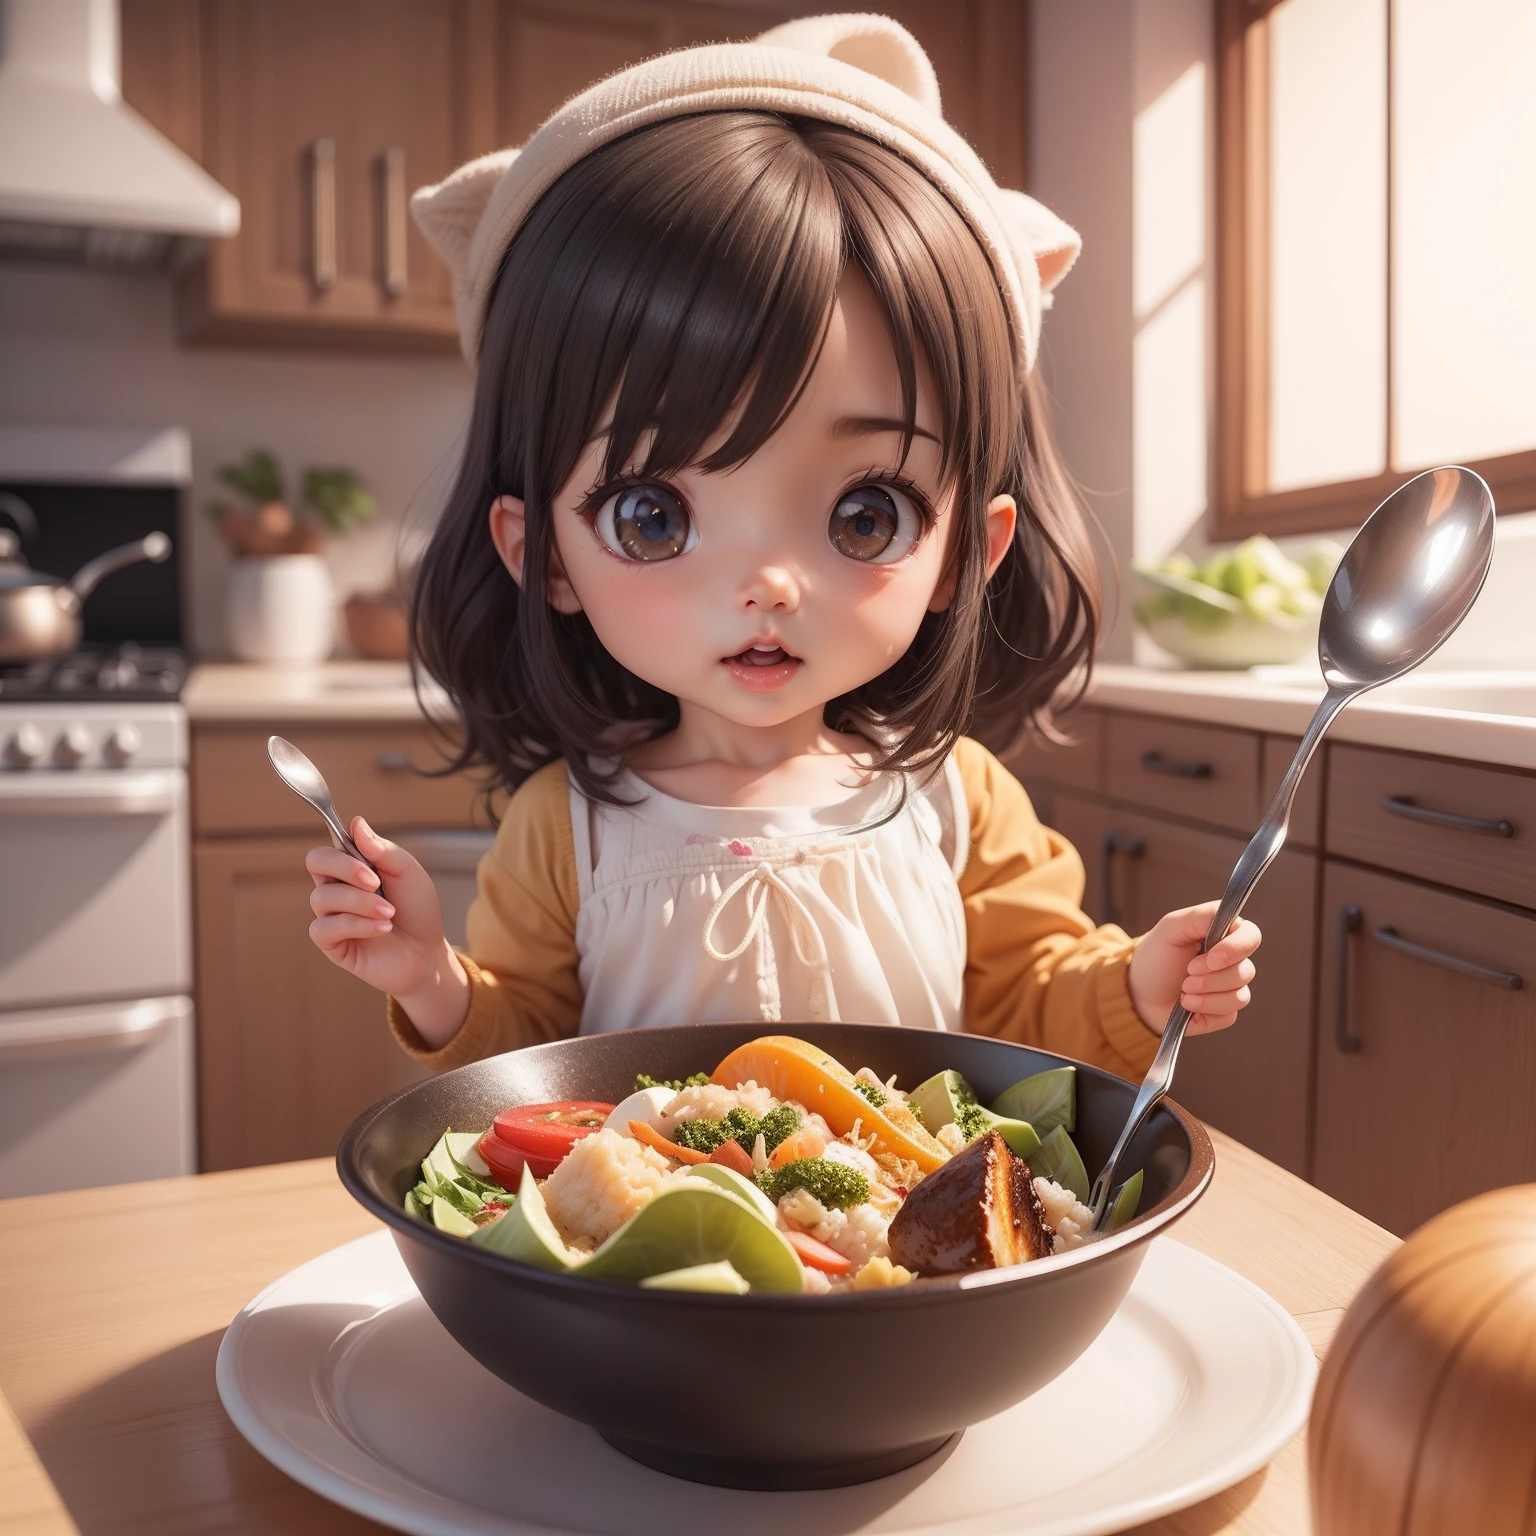 Lindo Bebé Chibi Anime、(((chibi 3d))) (mejor calidad), (Mesa)、スプーン🥄を持って、お皿に乗ったカレーライス🍛を食べる、un vaso de agua、Plato de ensalada de verduras、Cocina Chibi、pelo oscuro、Agua en la boca